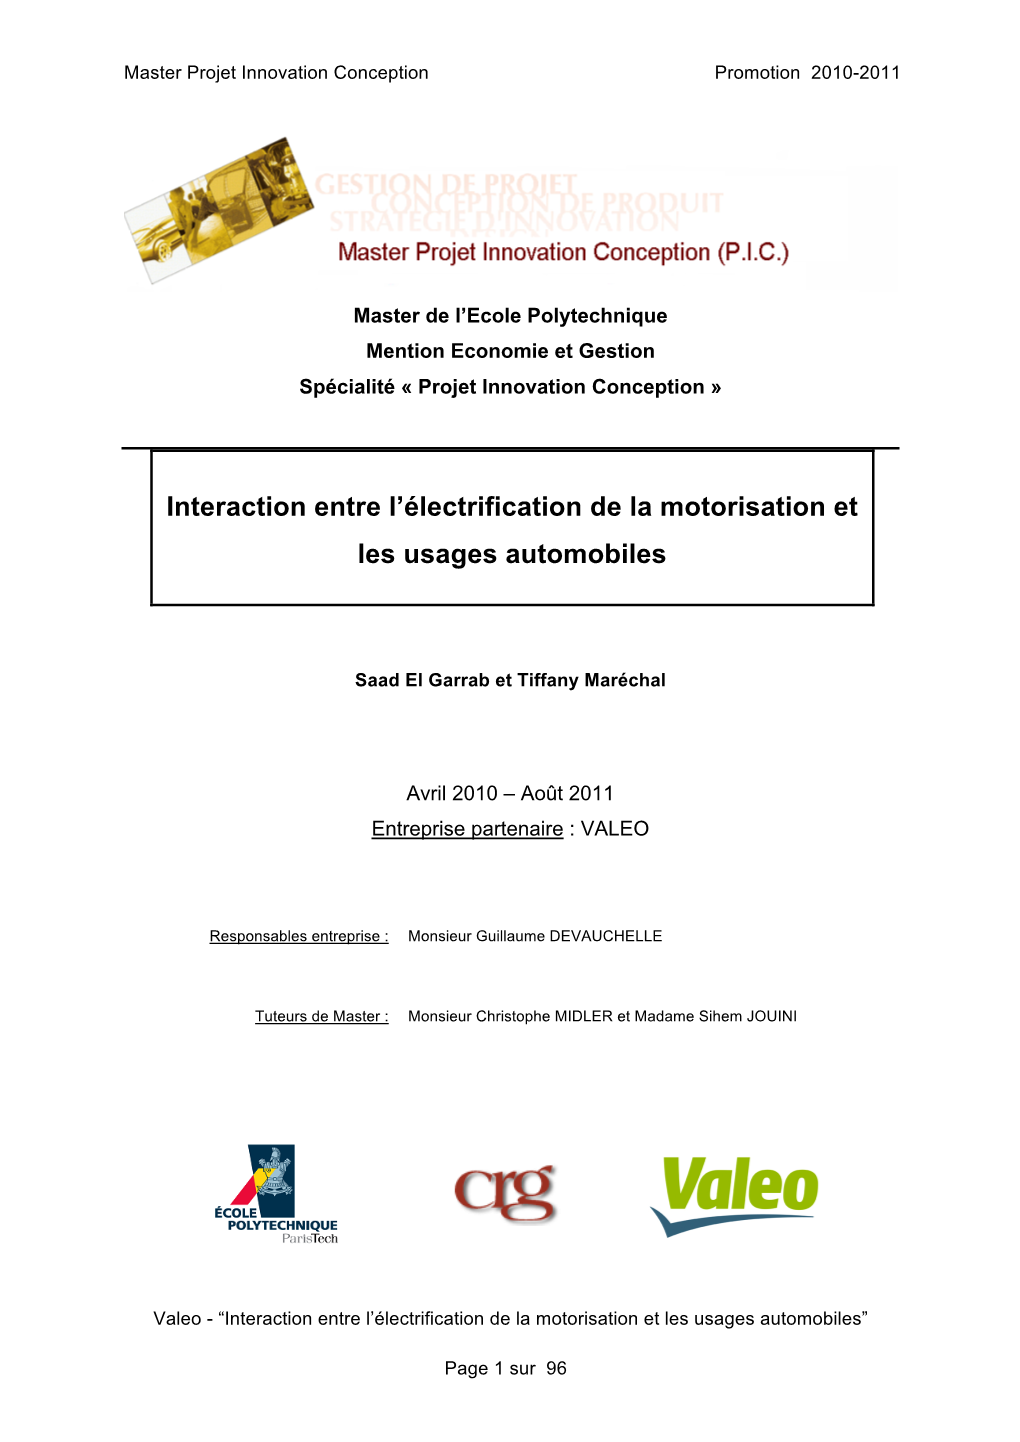 Interaction Entre L'électrification De La Motorisation Et Les Usages